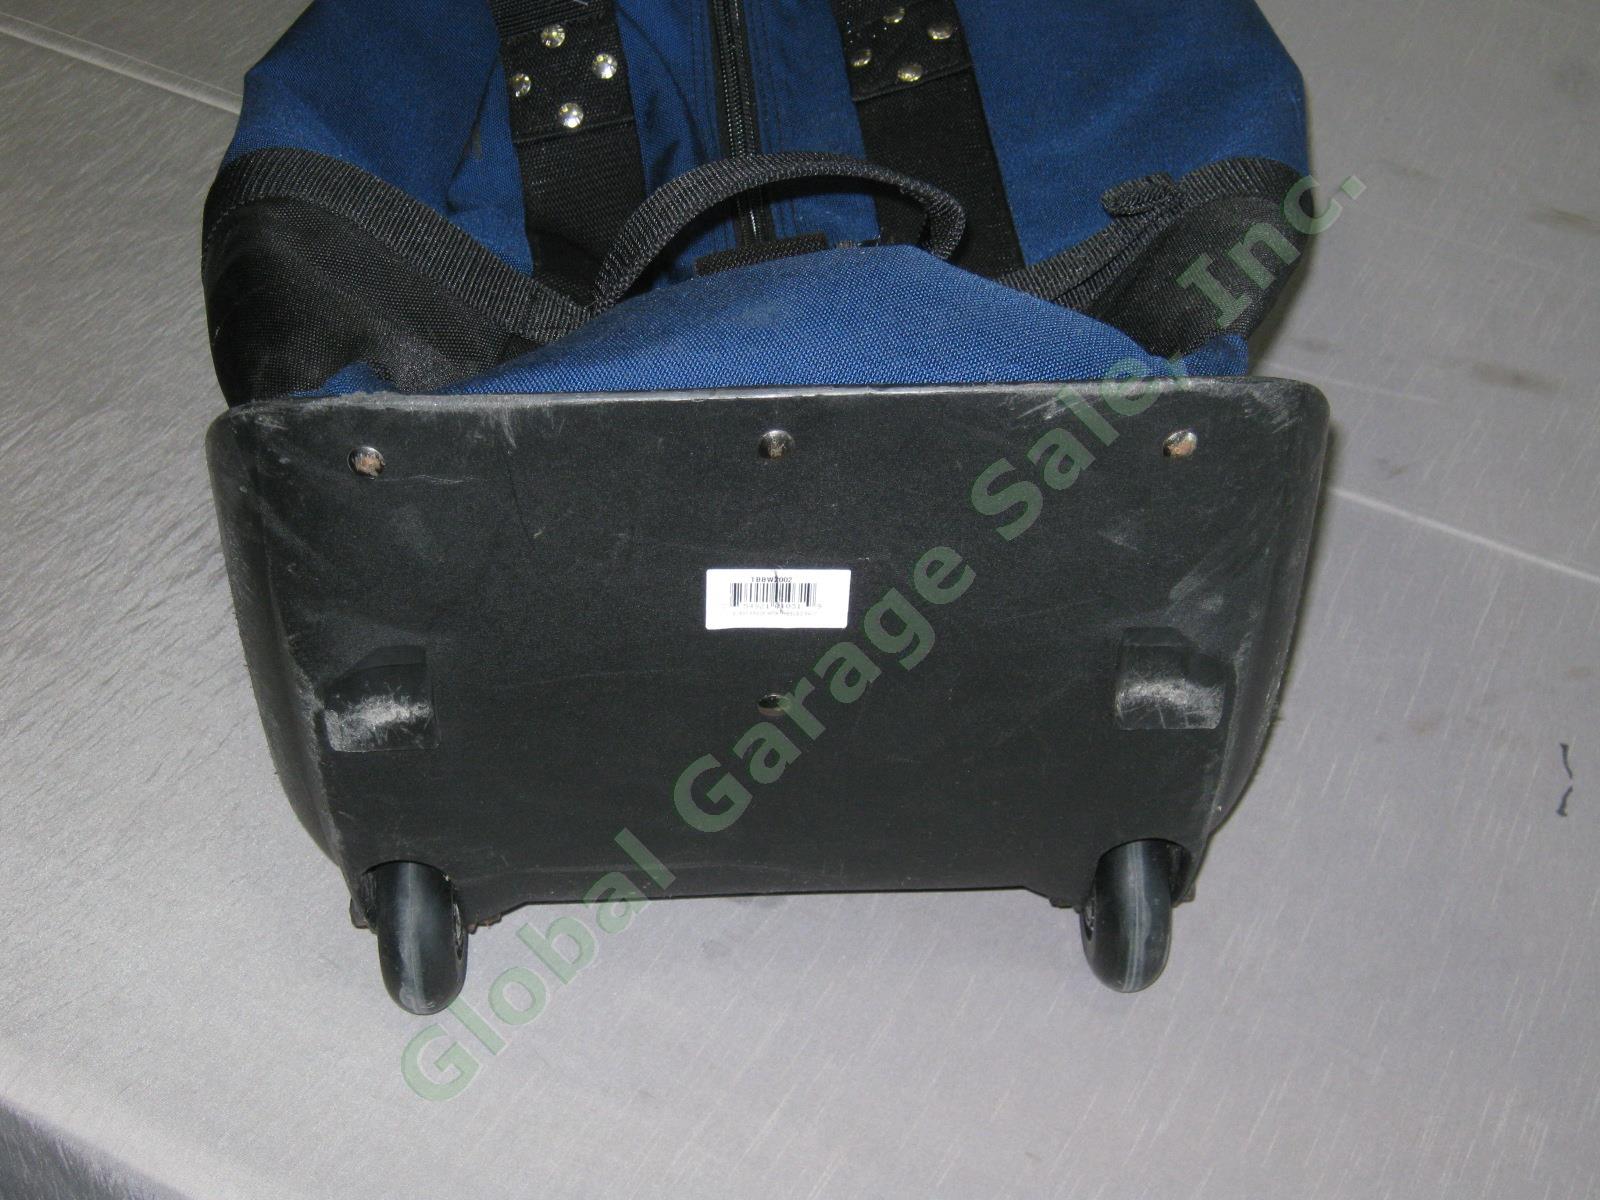 Navy Club Glove Burst Proof Travel Golf Club Bag With Wheels 2 II Free Stiff Arm 6